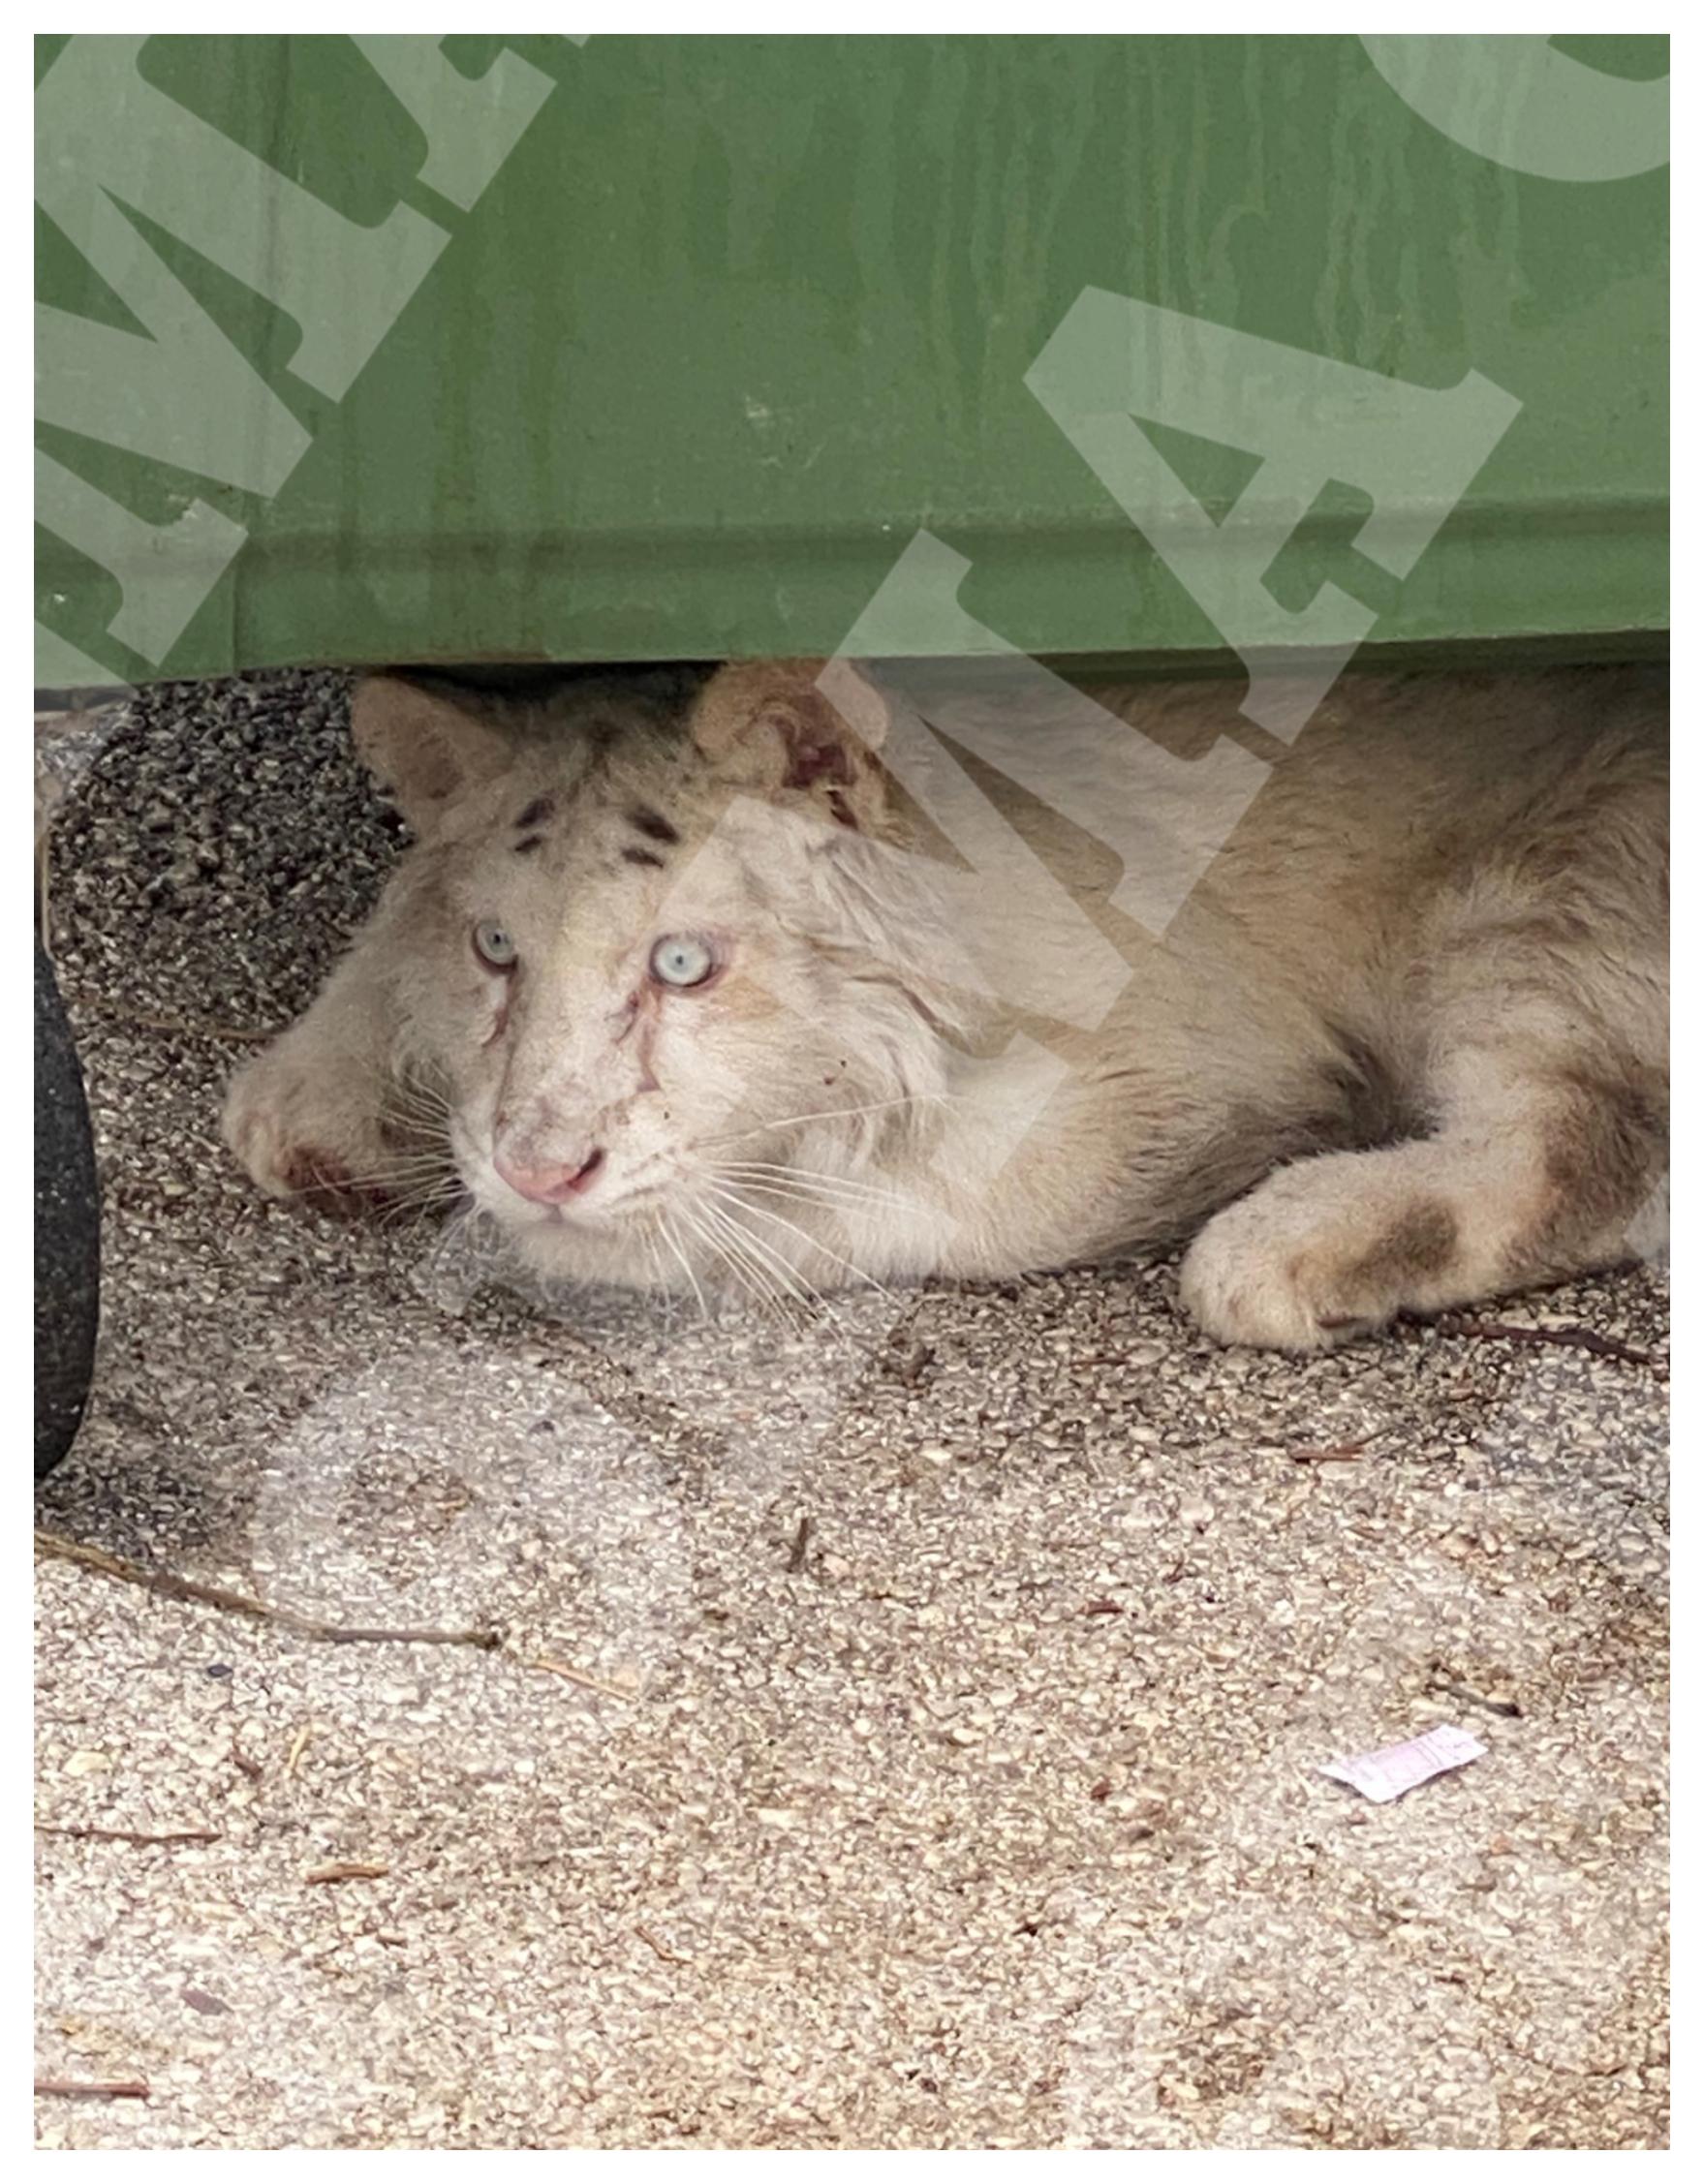 Αττικό Πάρκο: Τιγράκι βρέθηκε εγκαταλελειμμένο στα σκουπίδια